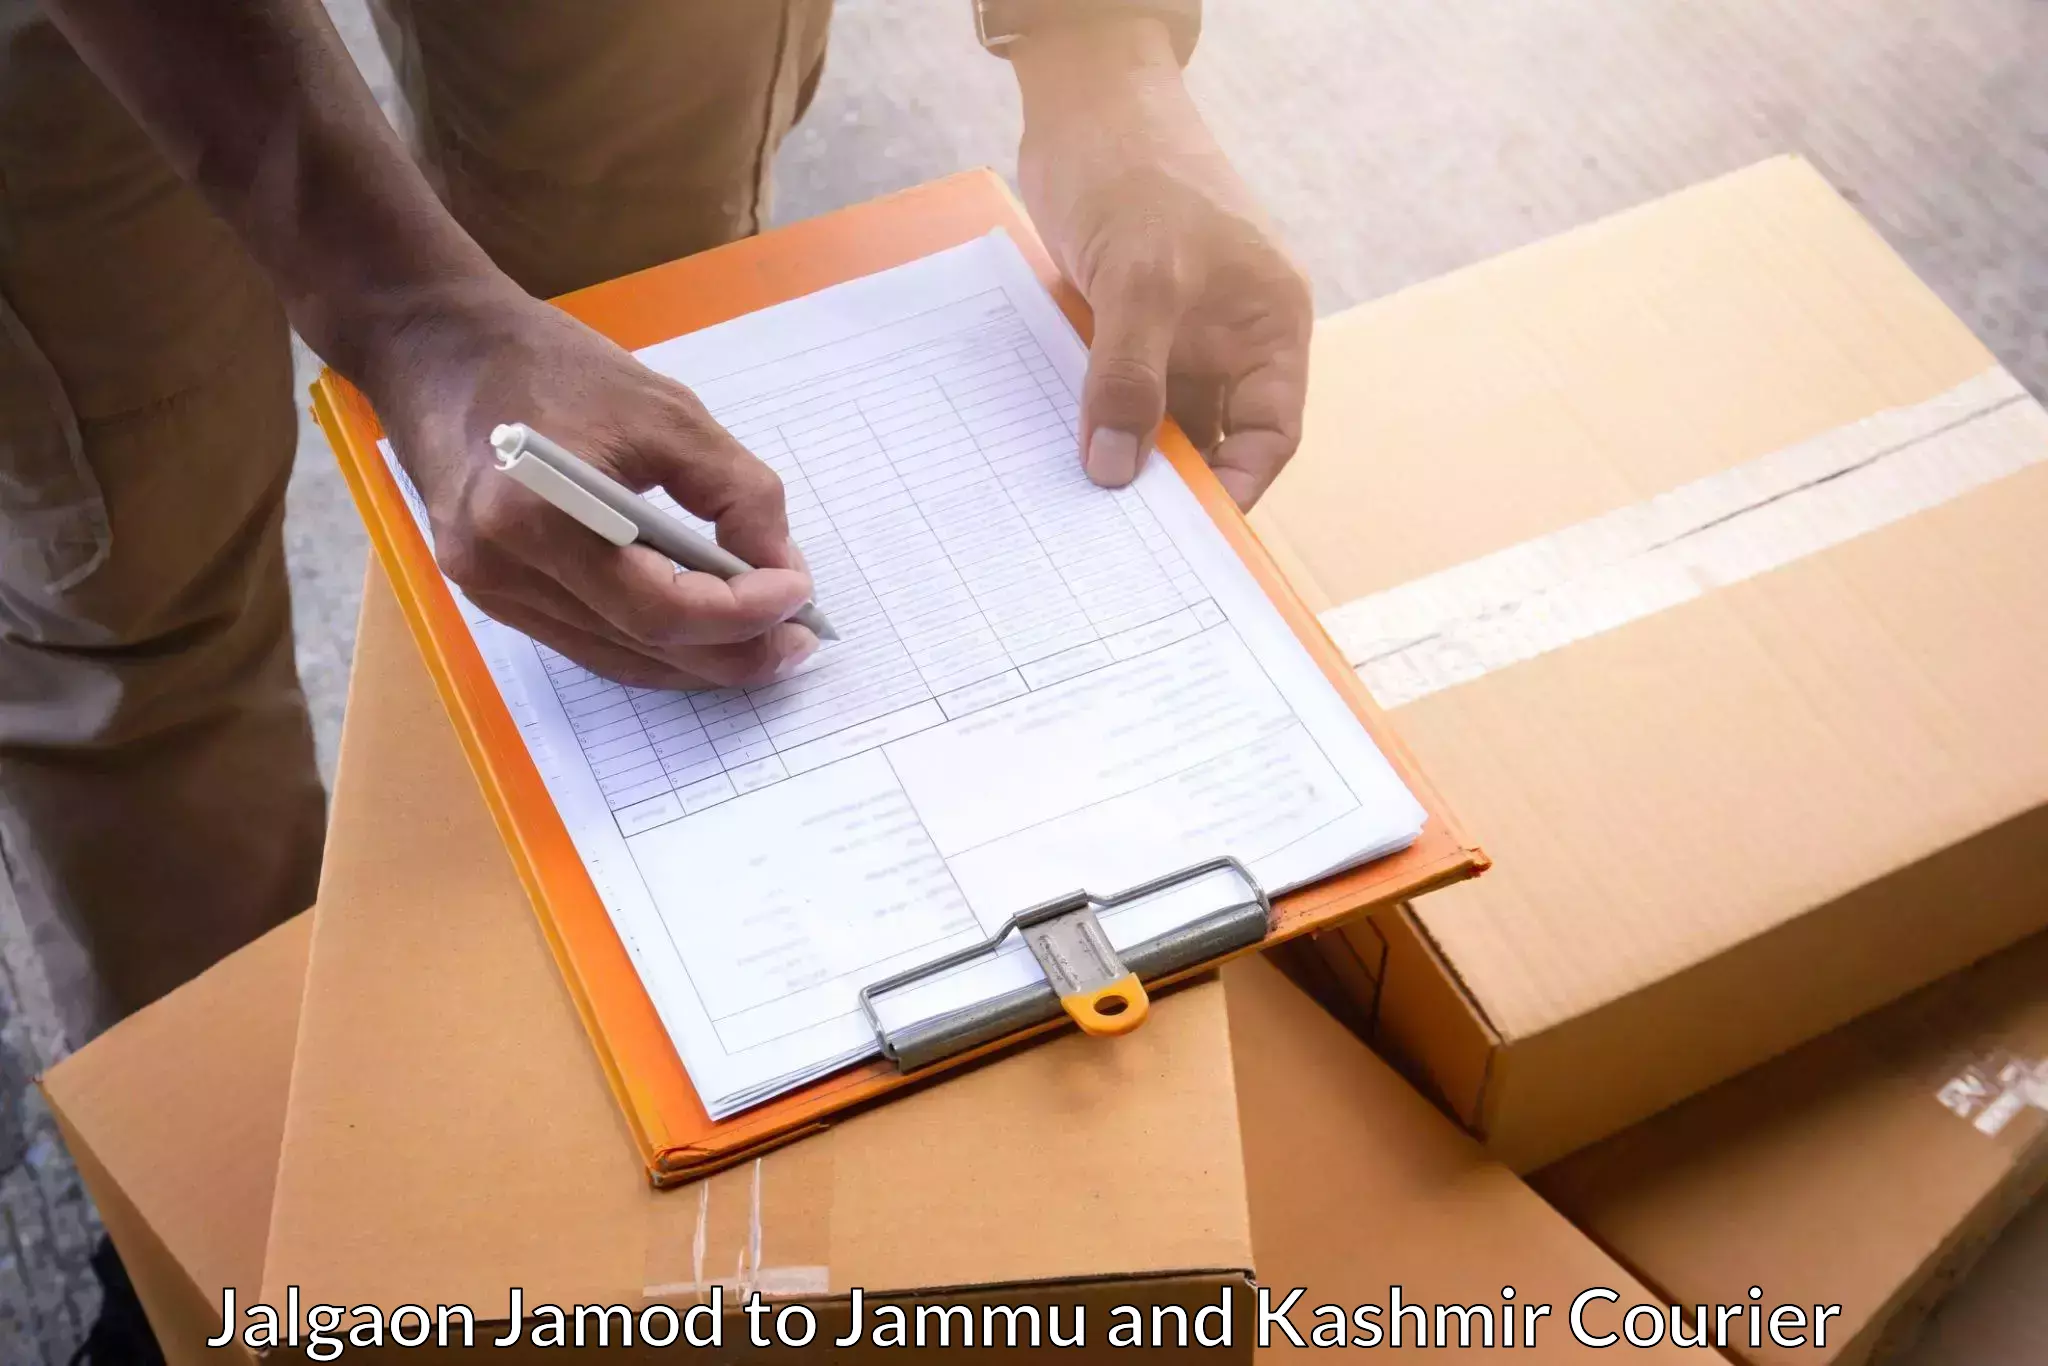 Diverse delivery methods Jalgaon Jamod to Srinagar Kashmir